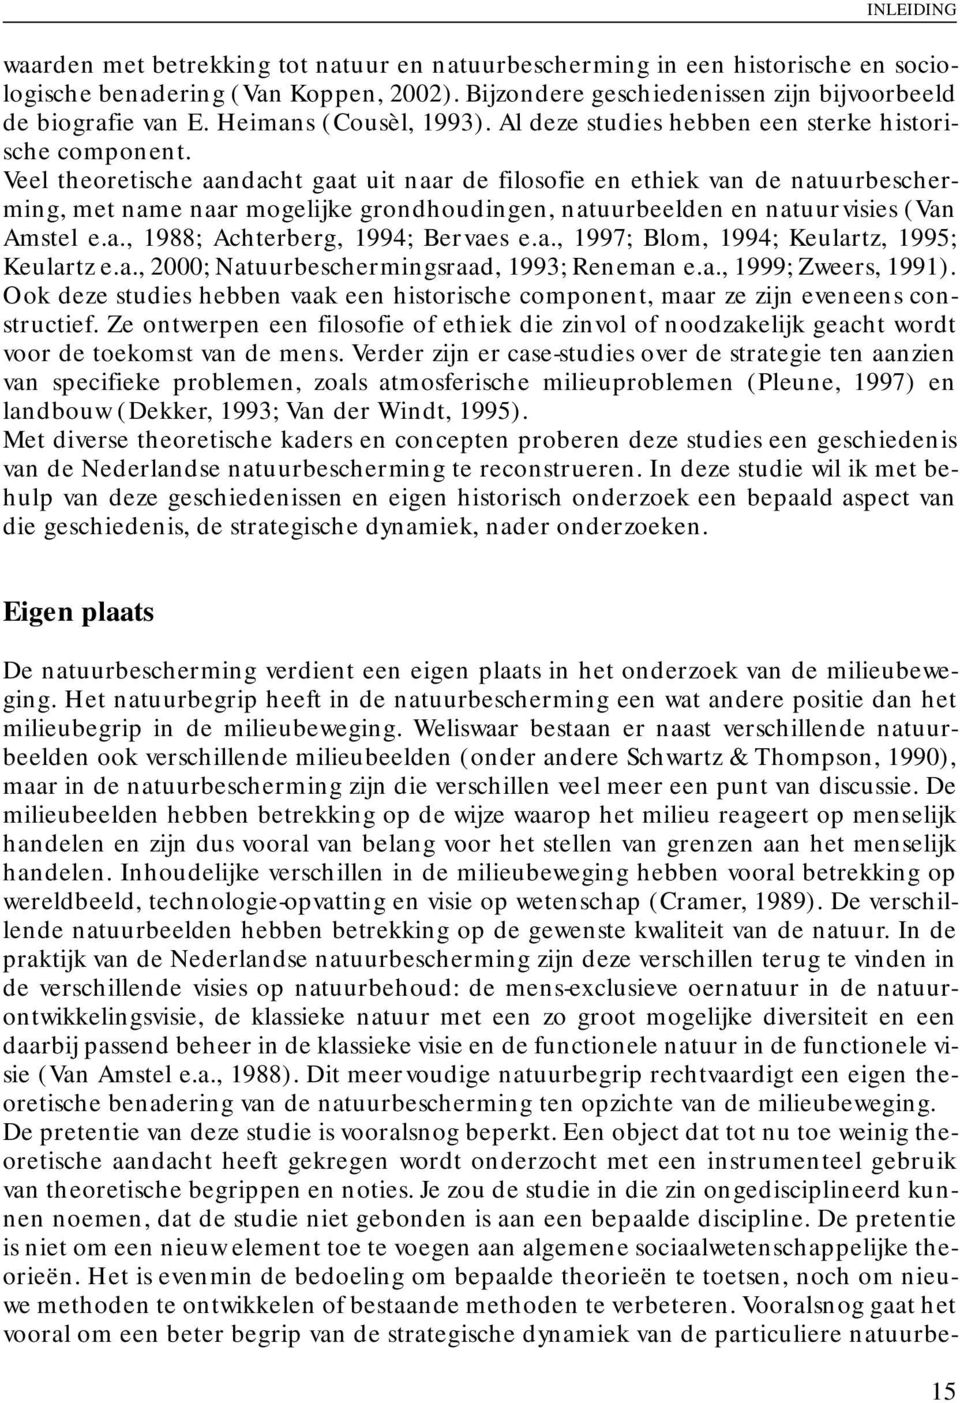 Veel theoretische aandacht gaat uit naar de filosofie en ethiek van de natuurbescherming, met name naar mogelijke grondhoudingen, natuurbeelden en natuurvisies (Van Amstel e.a., 1988; Achterberg, 1994; Bervaes e.